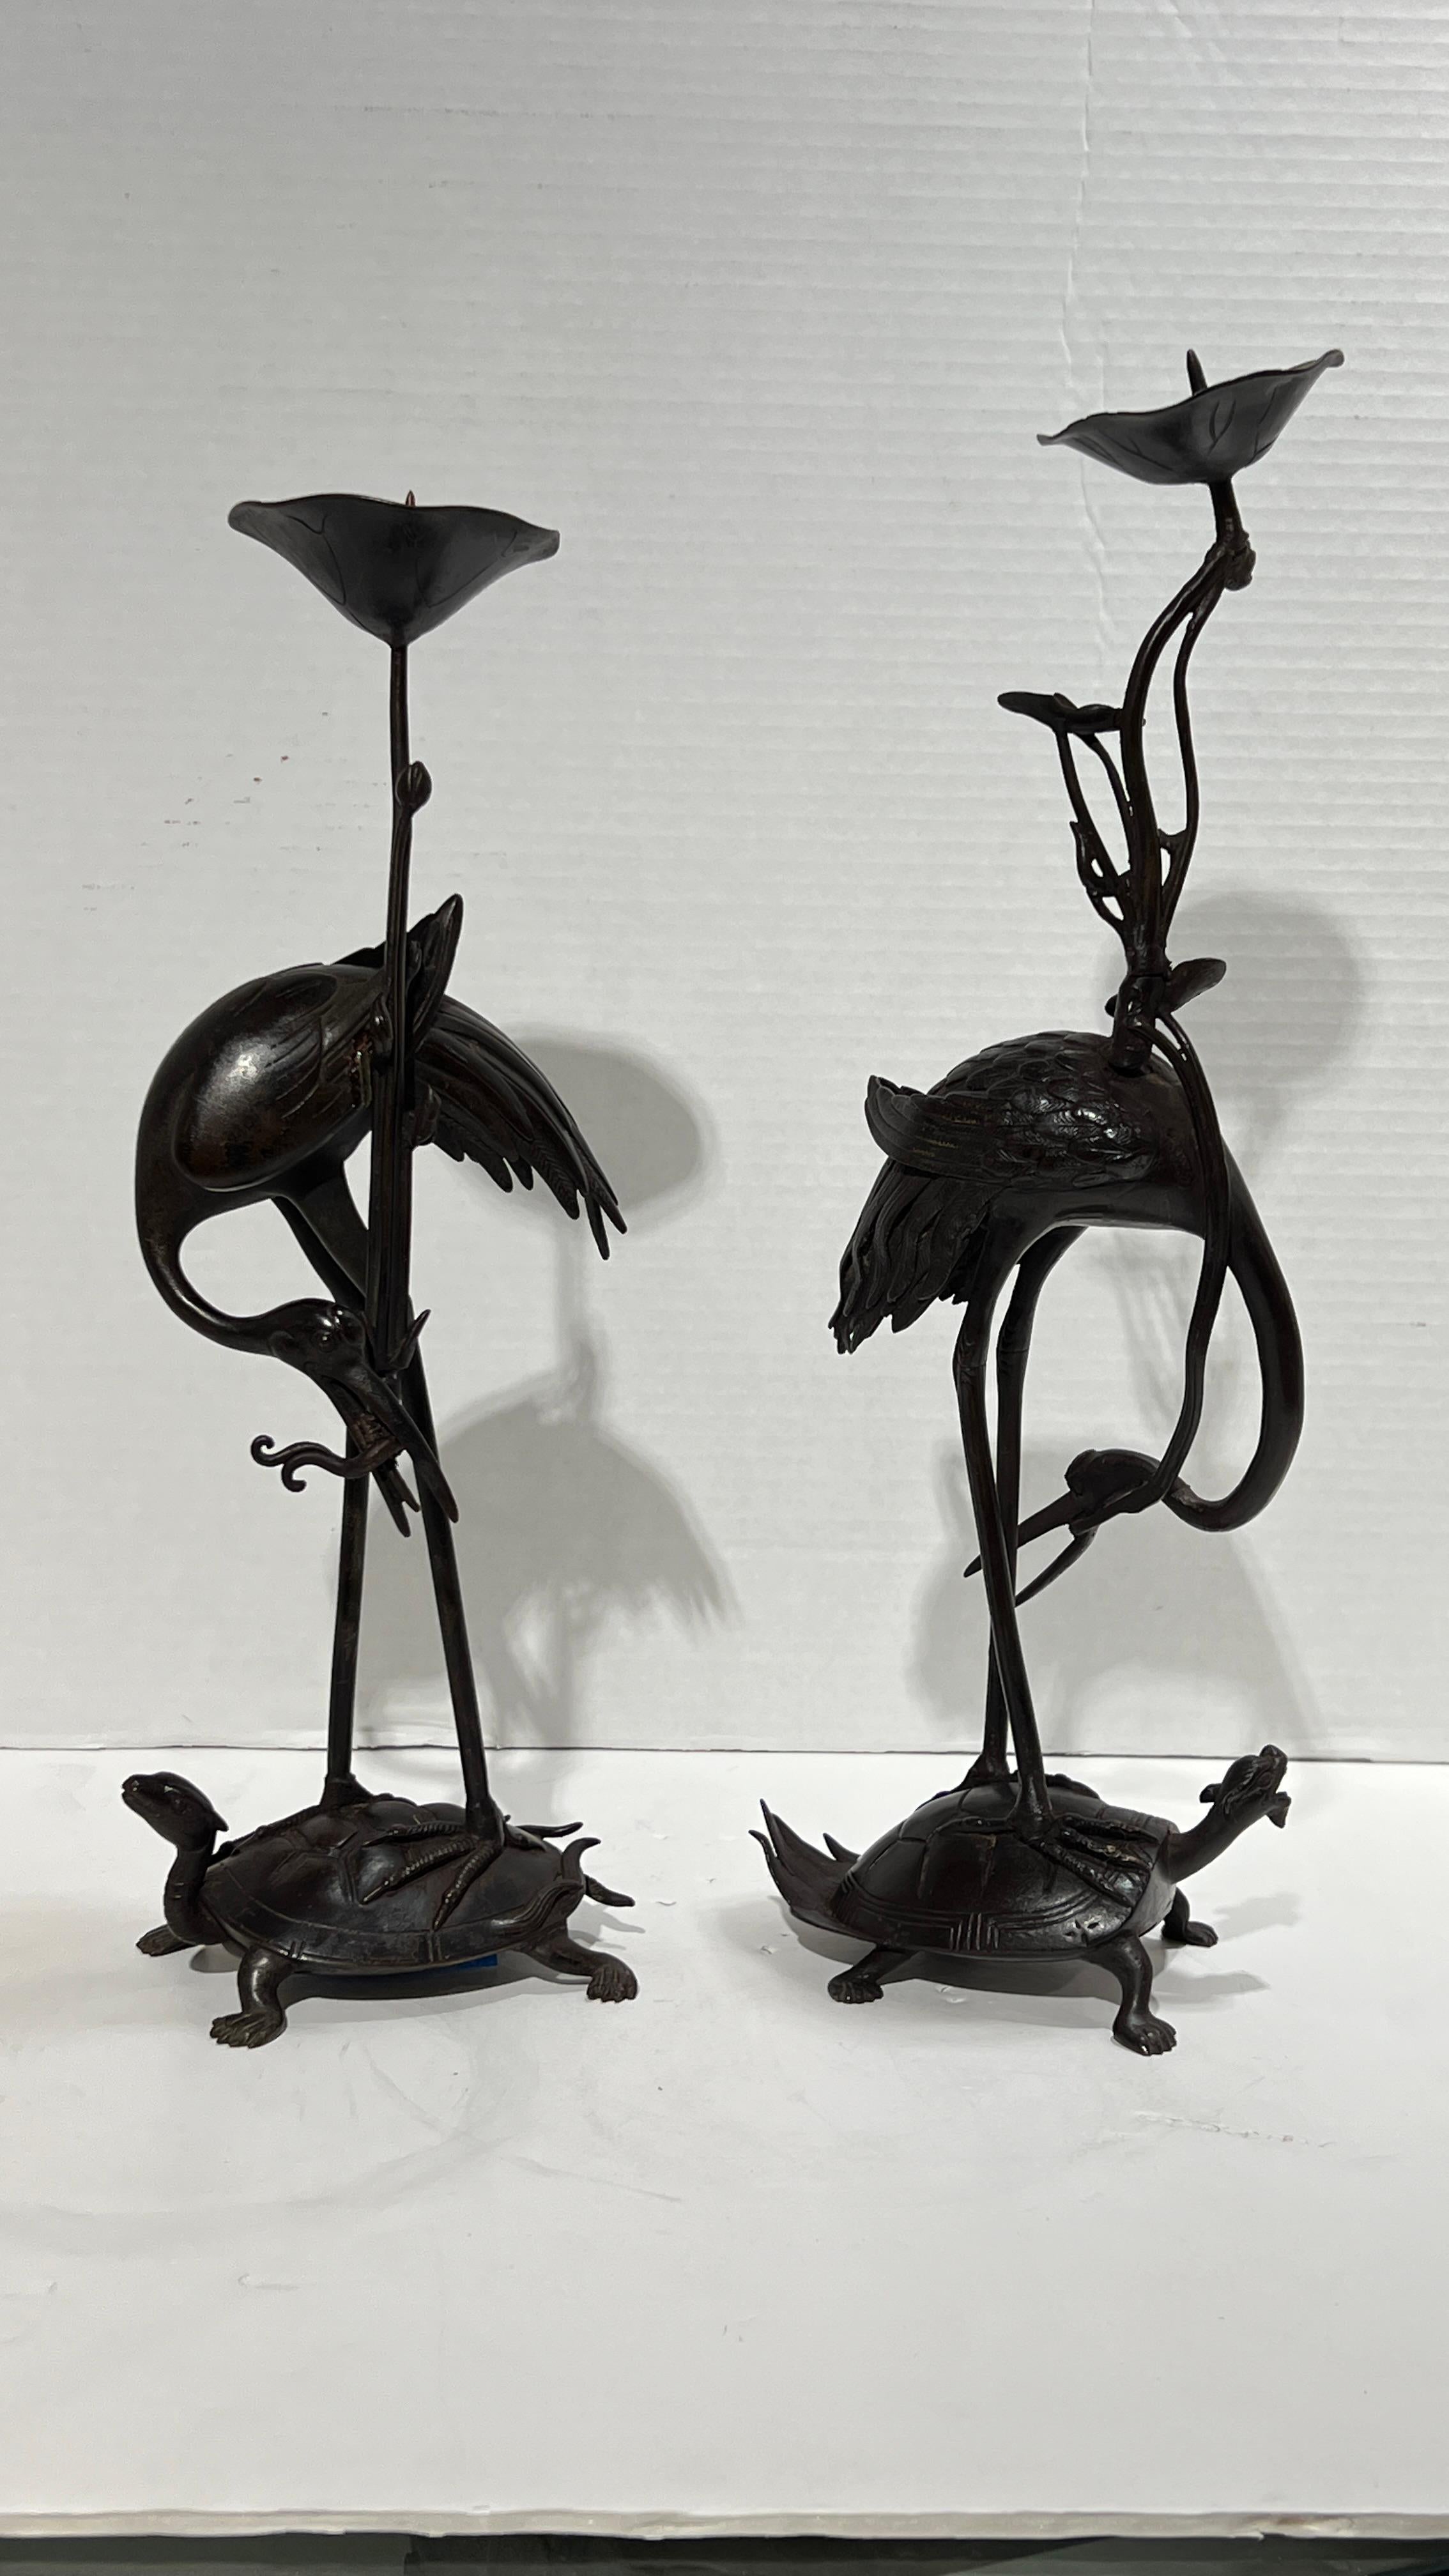 Paire de bougeoirs japonais d'époque Meiji du XIXe siècle en bronze patiné, représentant des grues (ou des hérons) debout sur des tortues miniatures.